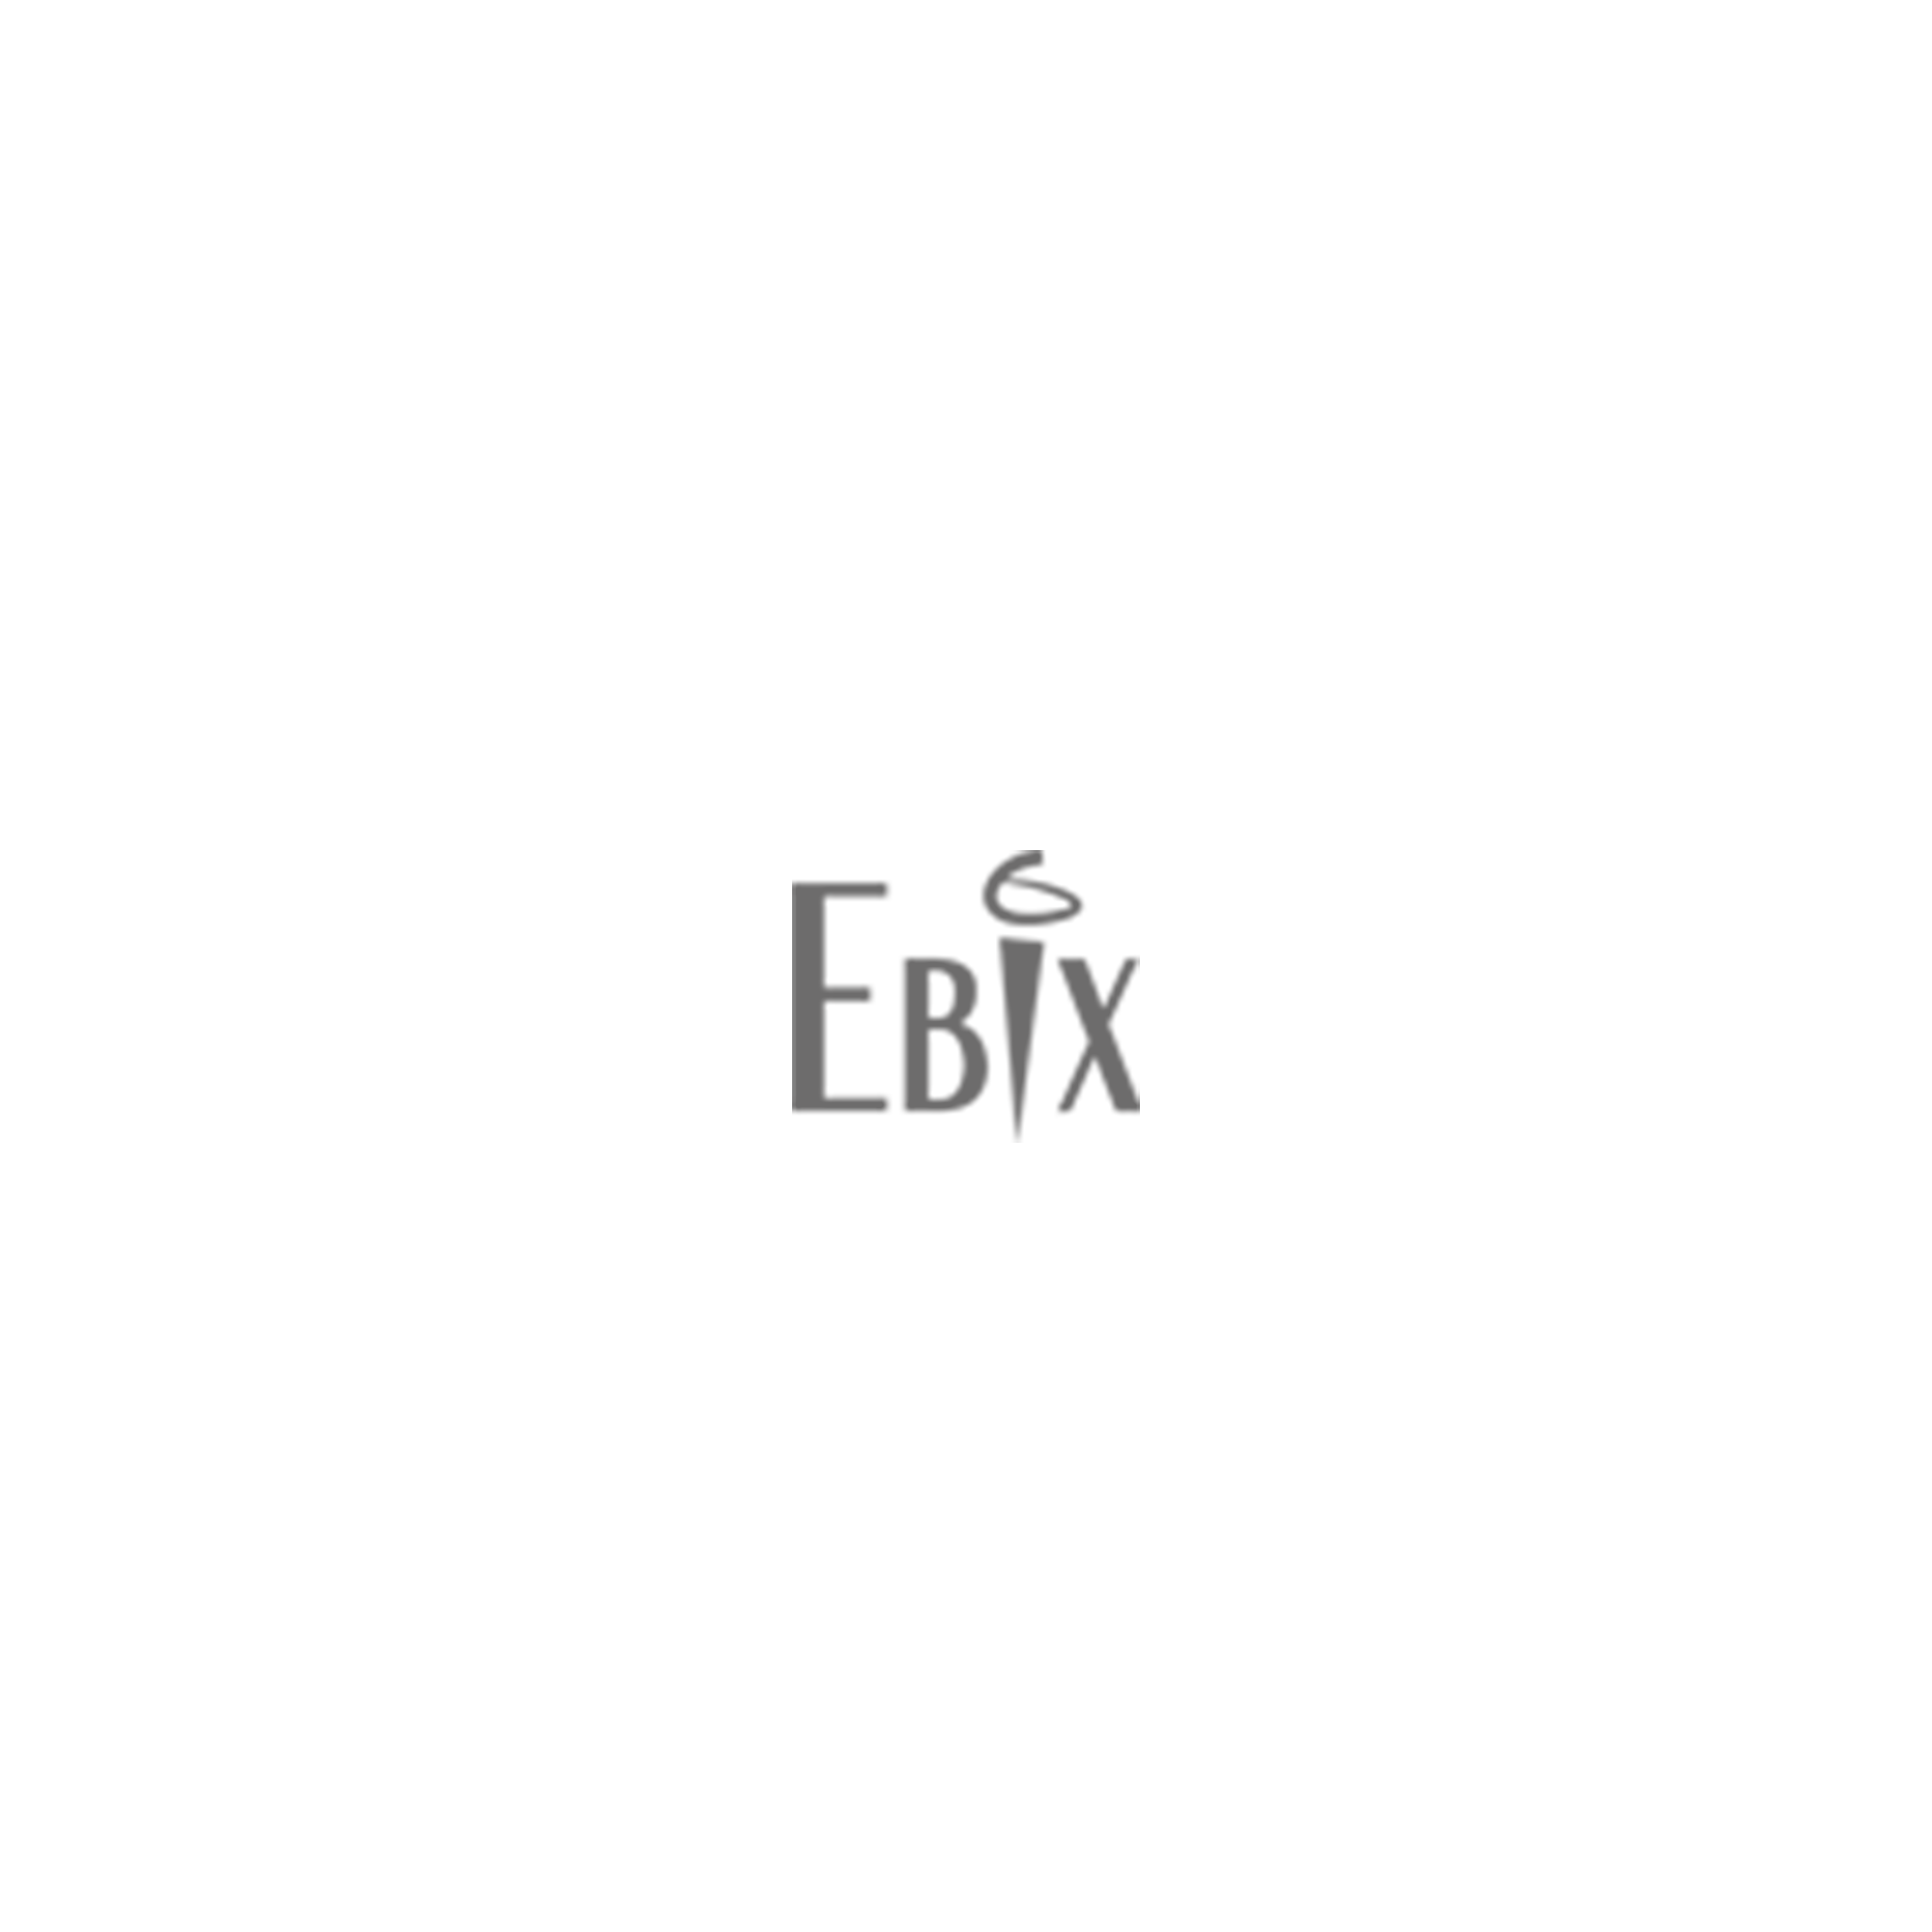 Ebix